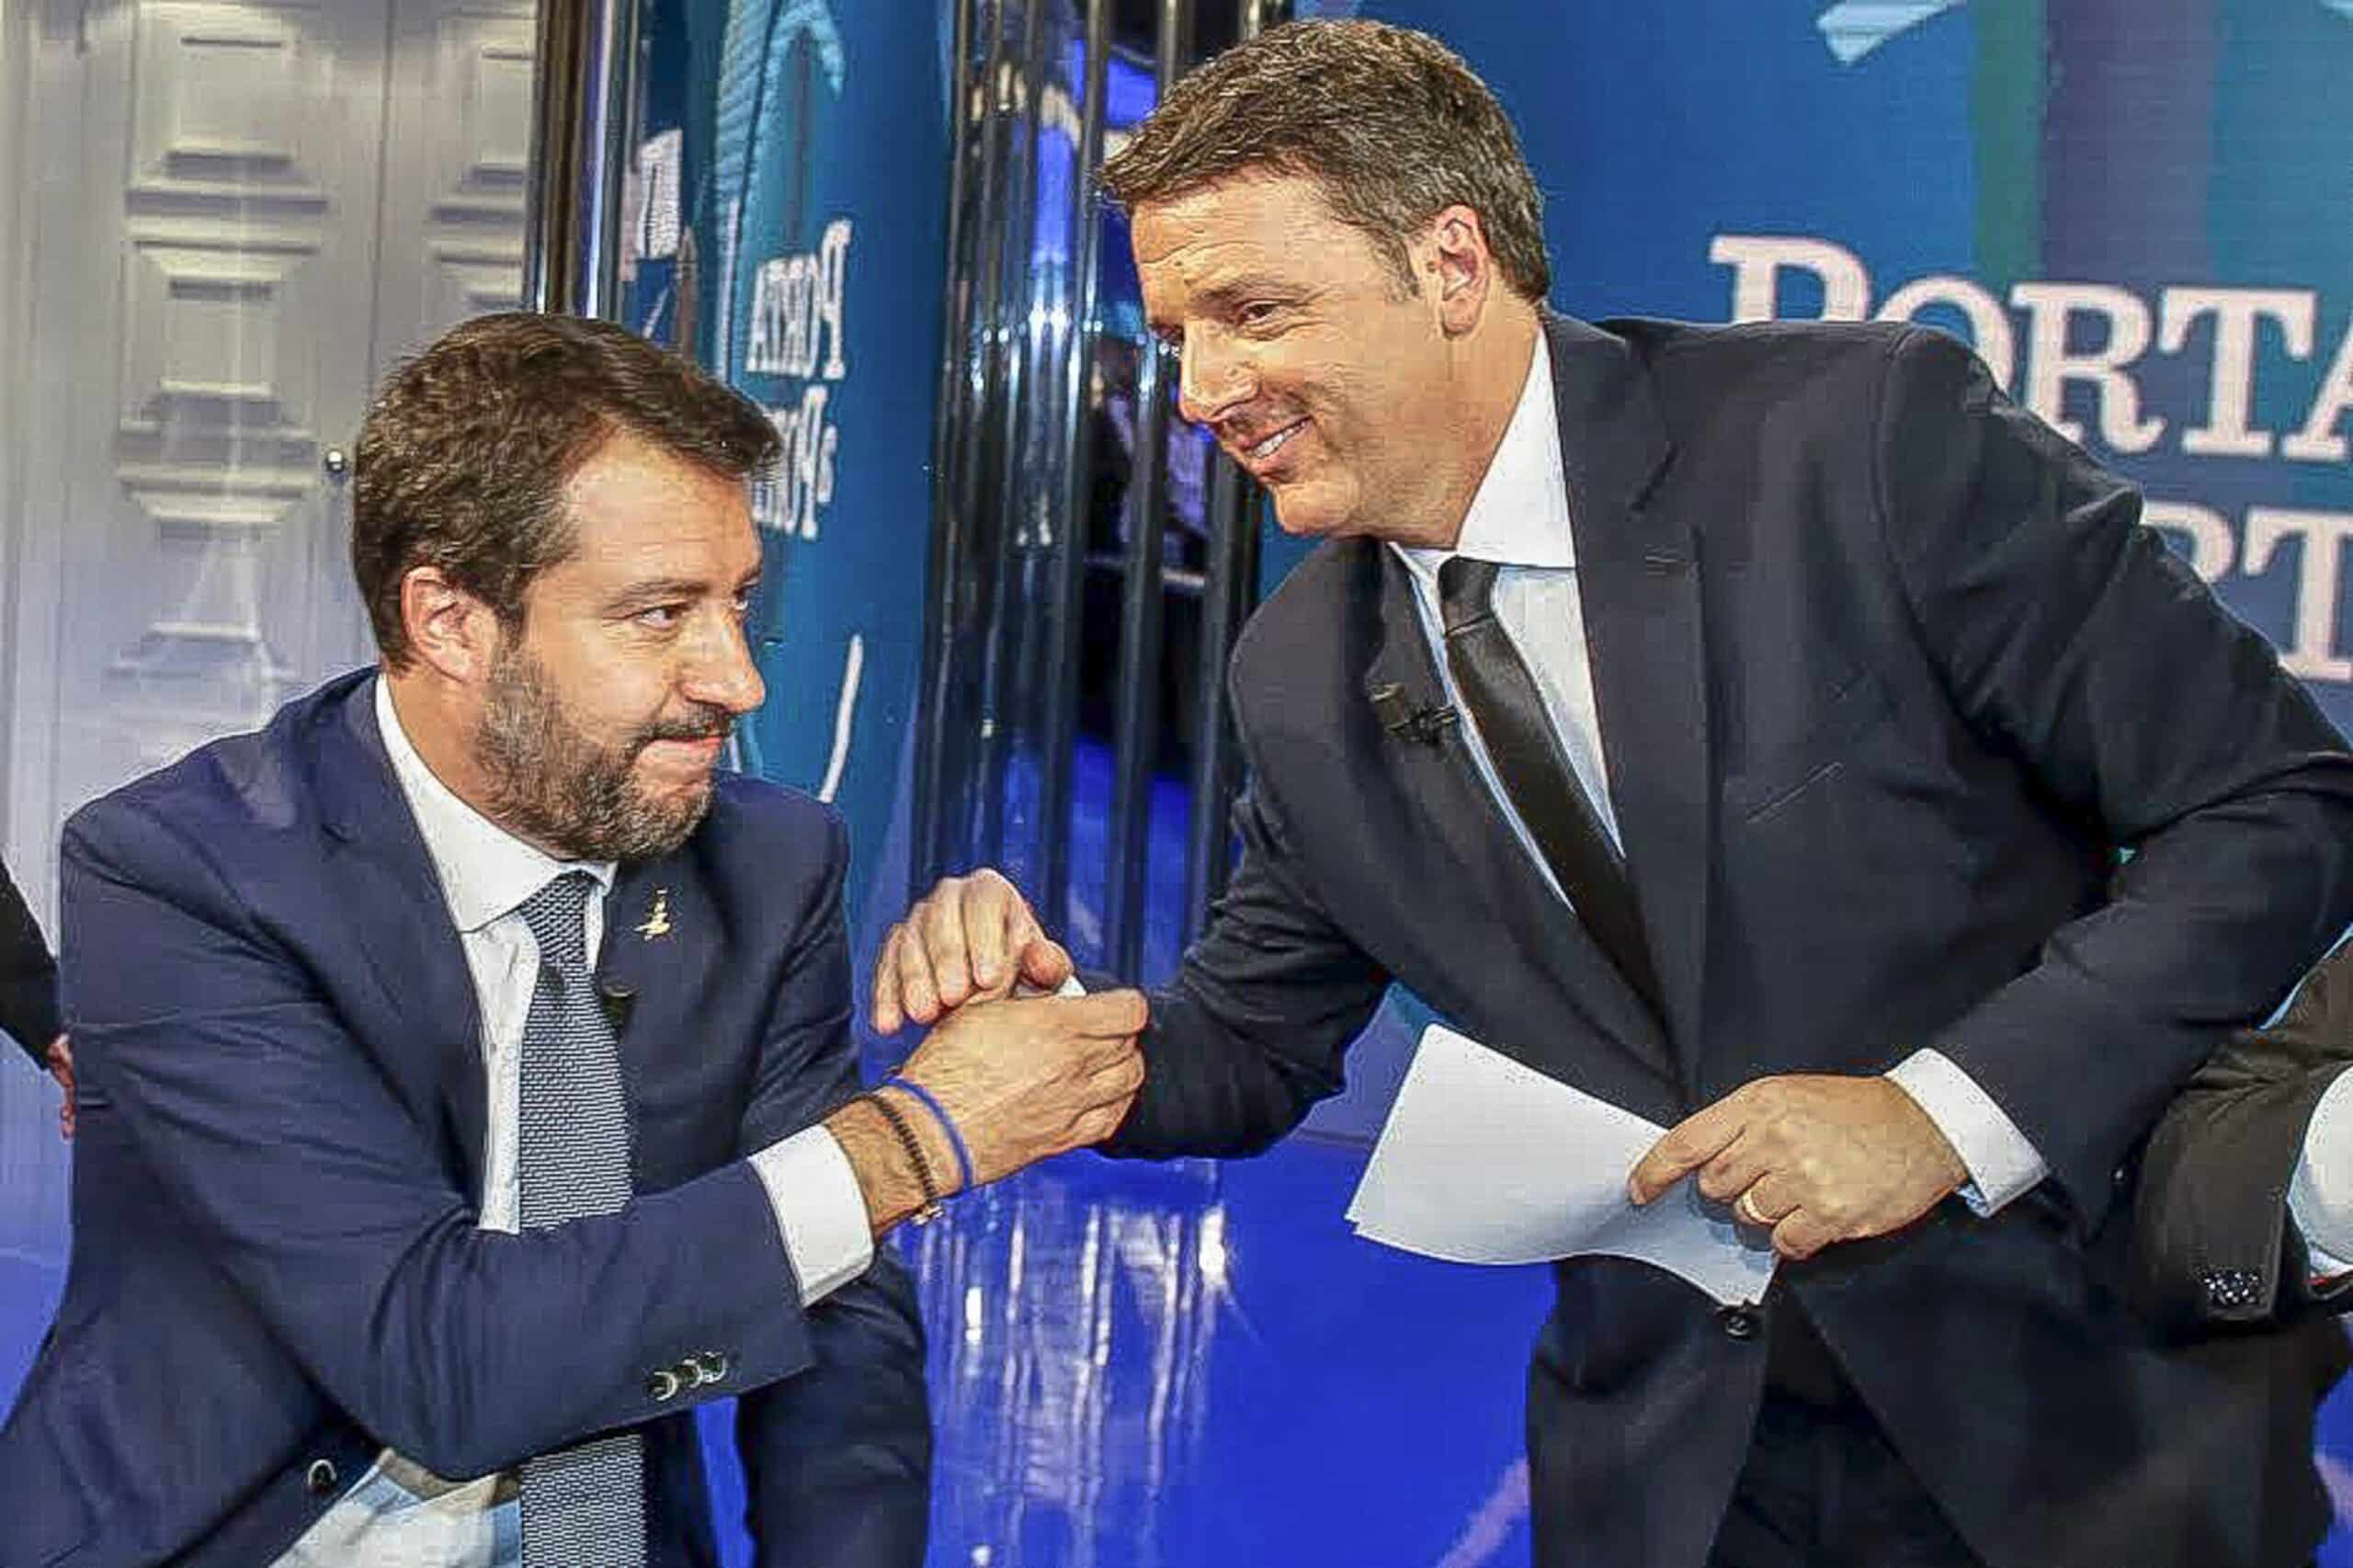 Bruno Vespa, “Matteo Renzi, Matteo Salvini e Luigi Di Maio sono sempre in contatto, trattano per il voto anticipato”